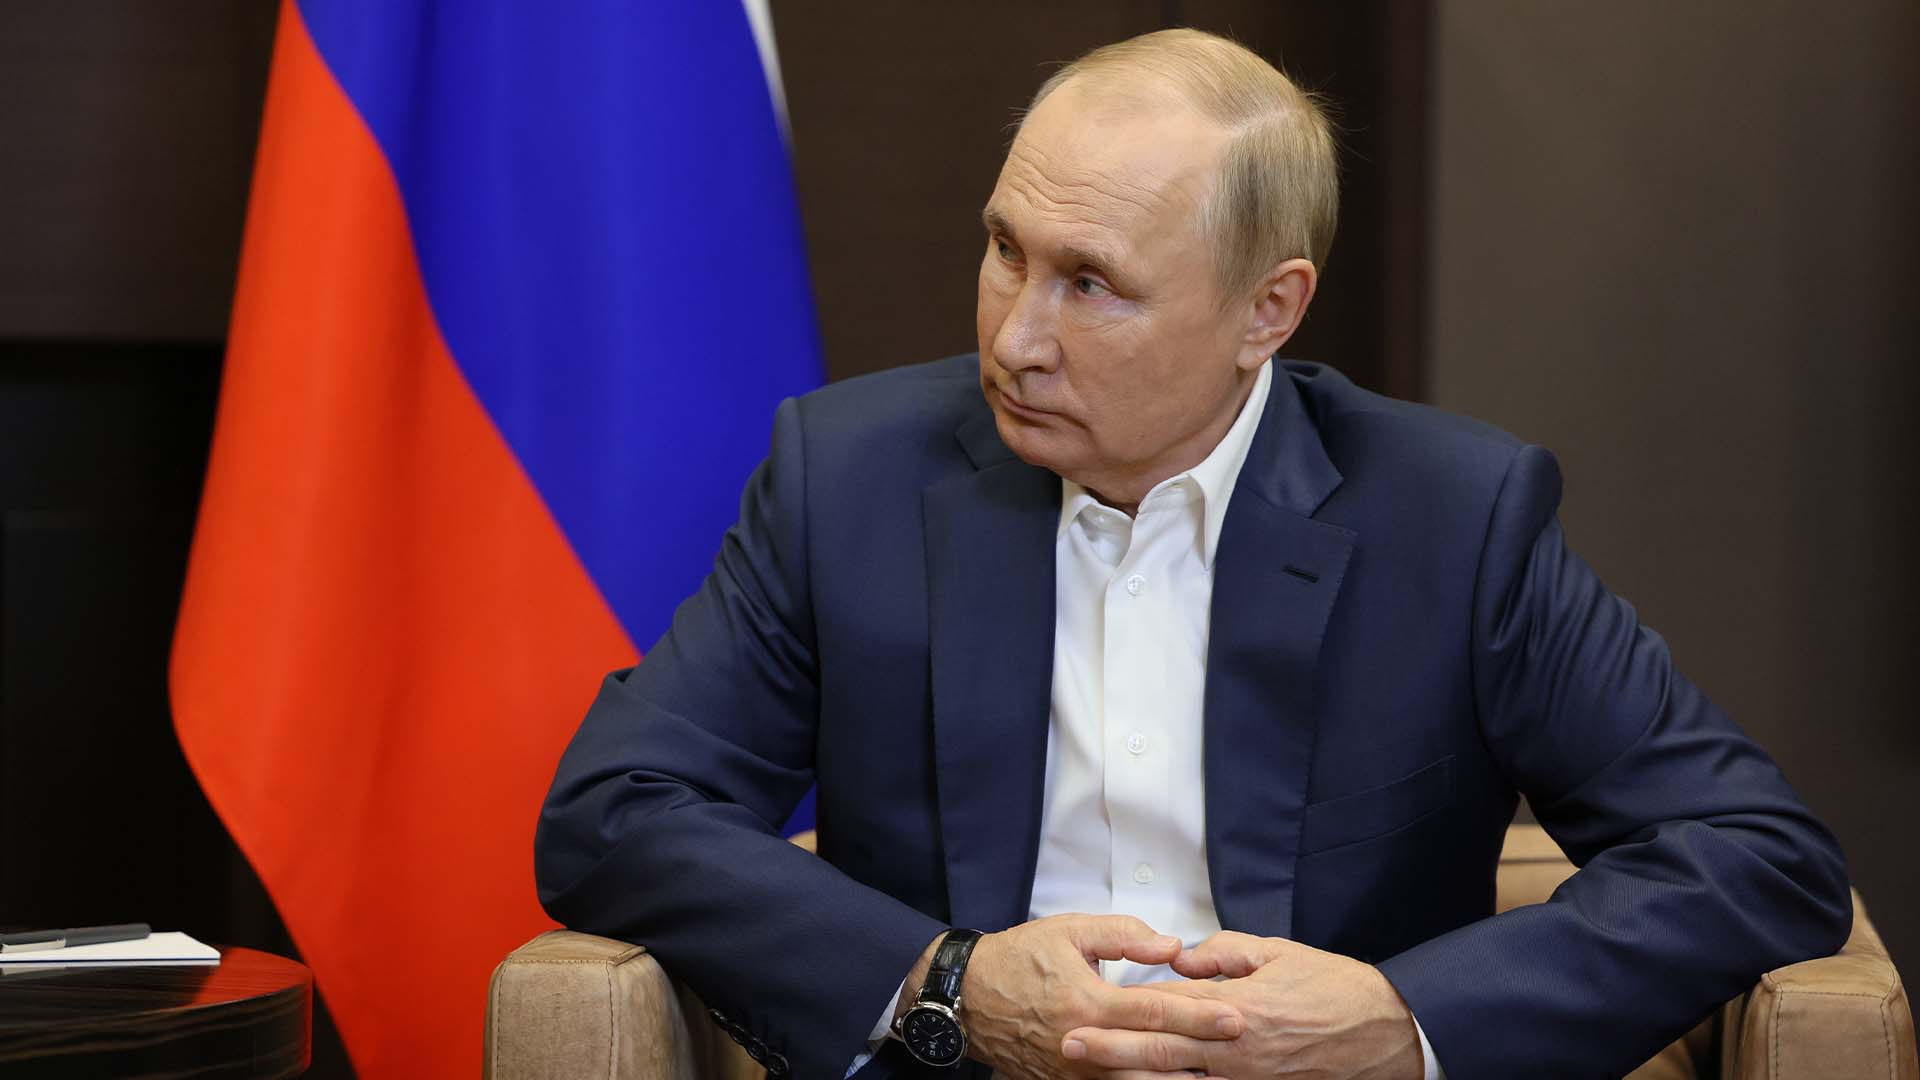 Le président russe Vladimir Poutine écoute le président biélorusse Alexandre Loukachenko lors de leur rencontre à Sotchi, en Russie, le lundi 26 septembre 2022.